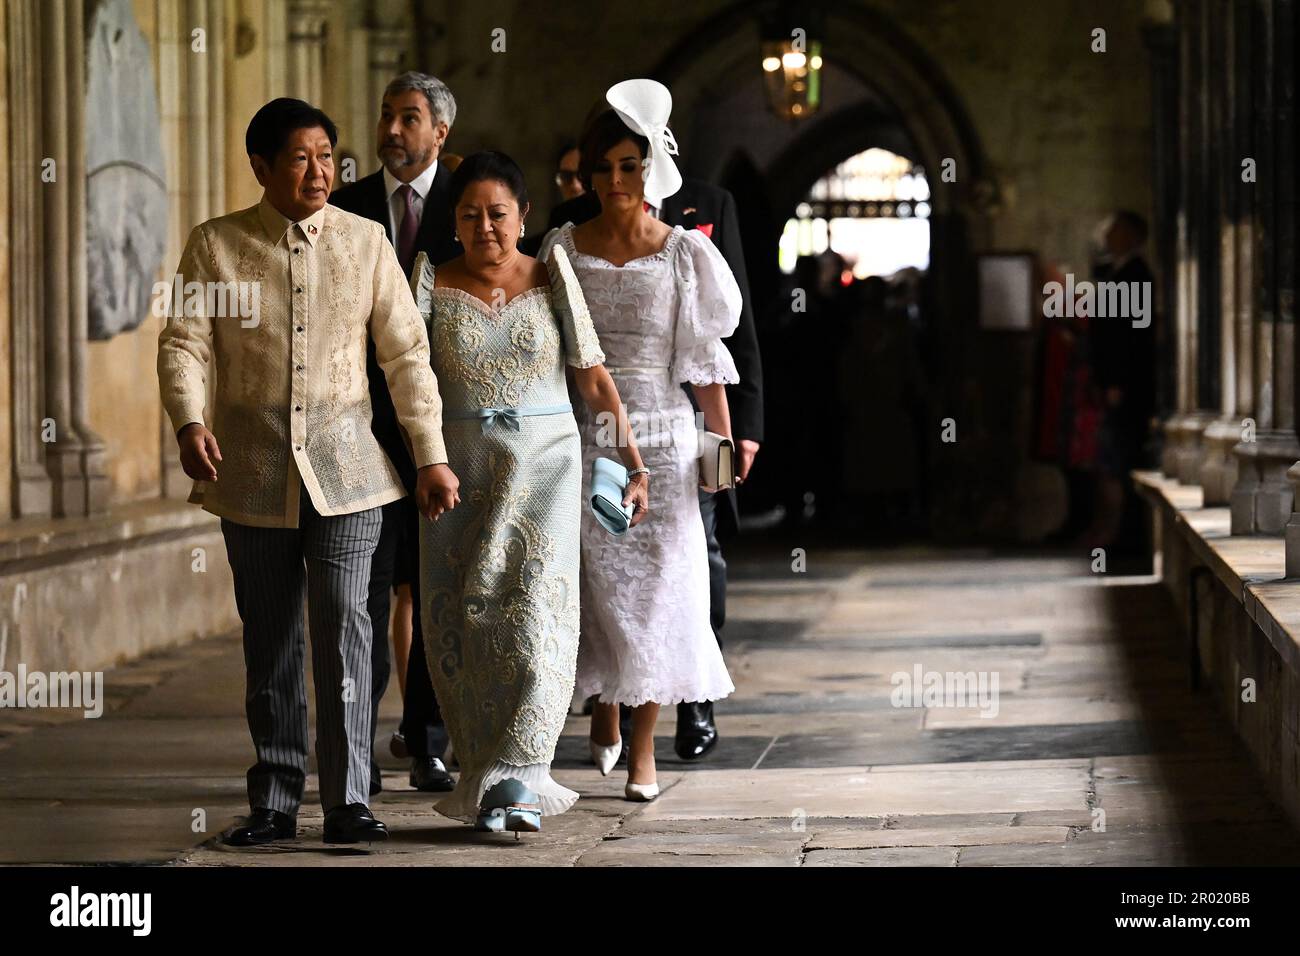 Der philippinische Präsident Bongbong Marcos (lecfft) und seine Frau Louise Marcos kamen vor der Krönungszeremonie von König Karl III. Und Königin Camilla in Westminster Abbey, London an. Foto: Samstag, 6. Mai 2023. Stockfoto